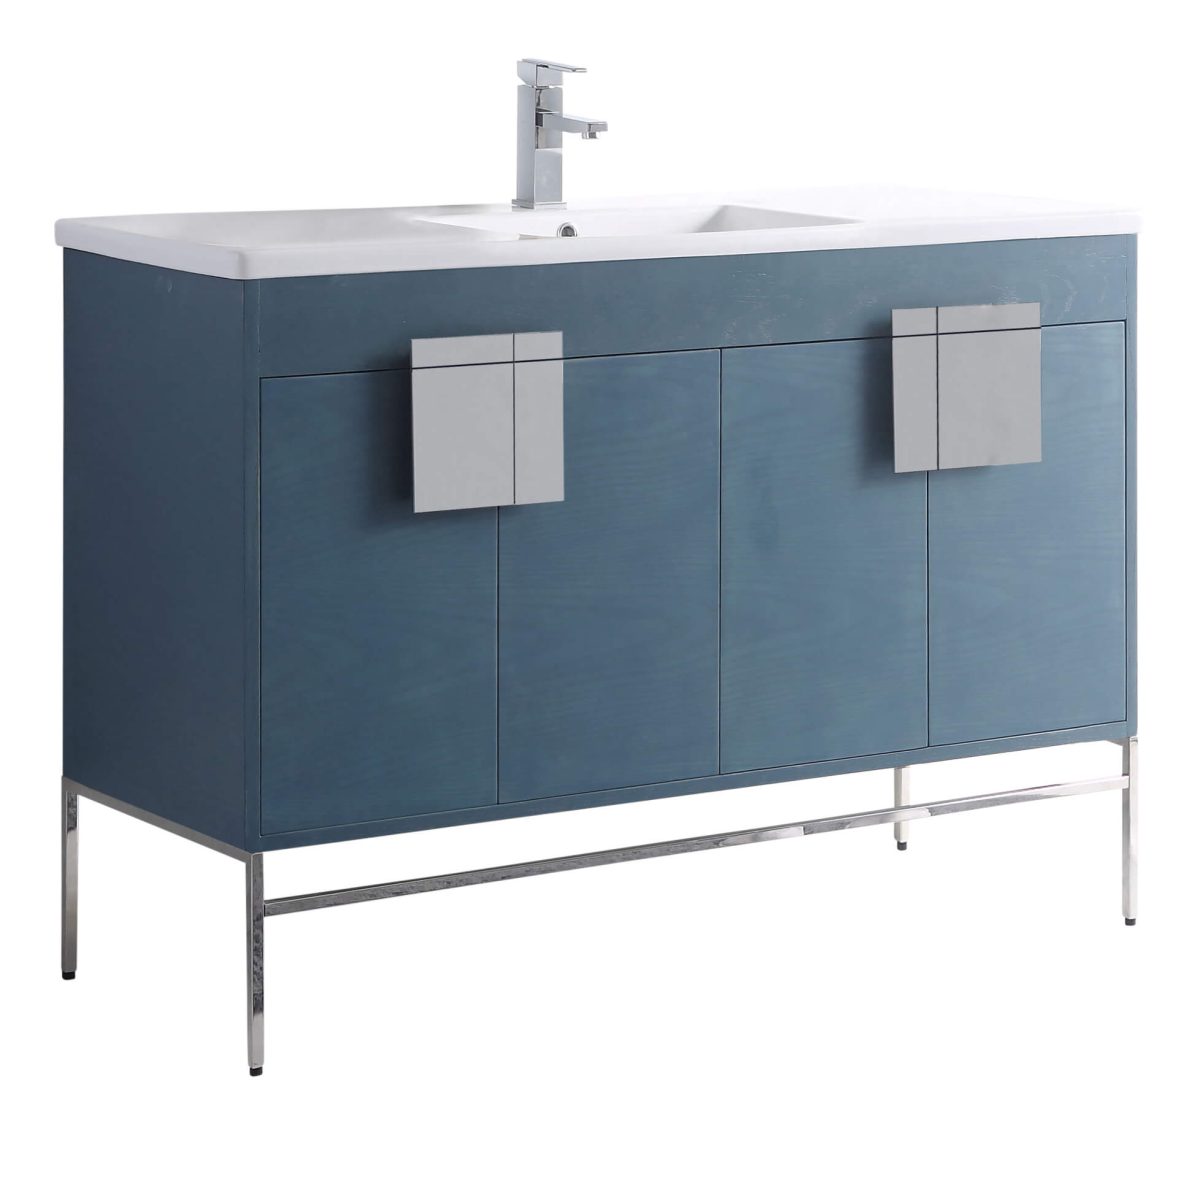 Shawbridge 48" Modern Single Bathroom Vanity  French Blue with Polished Chrome Hardware